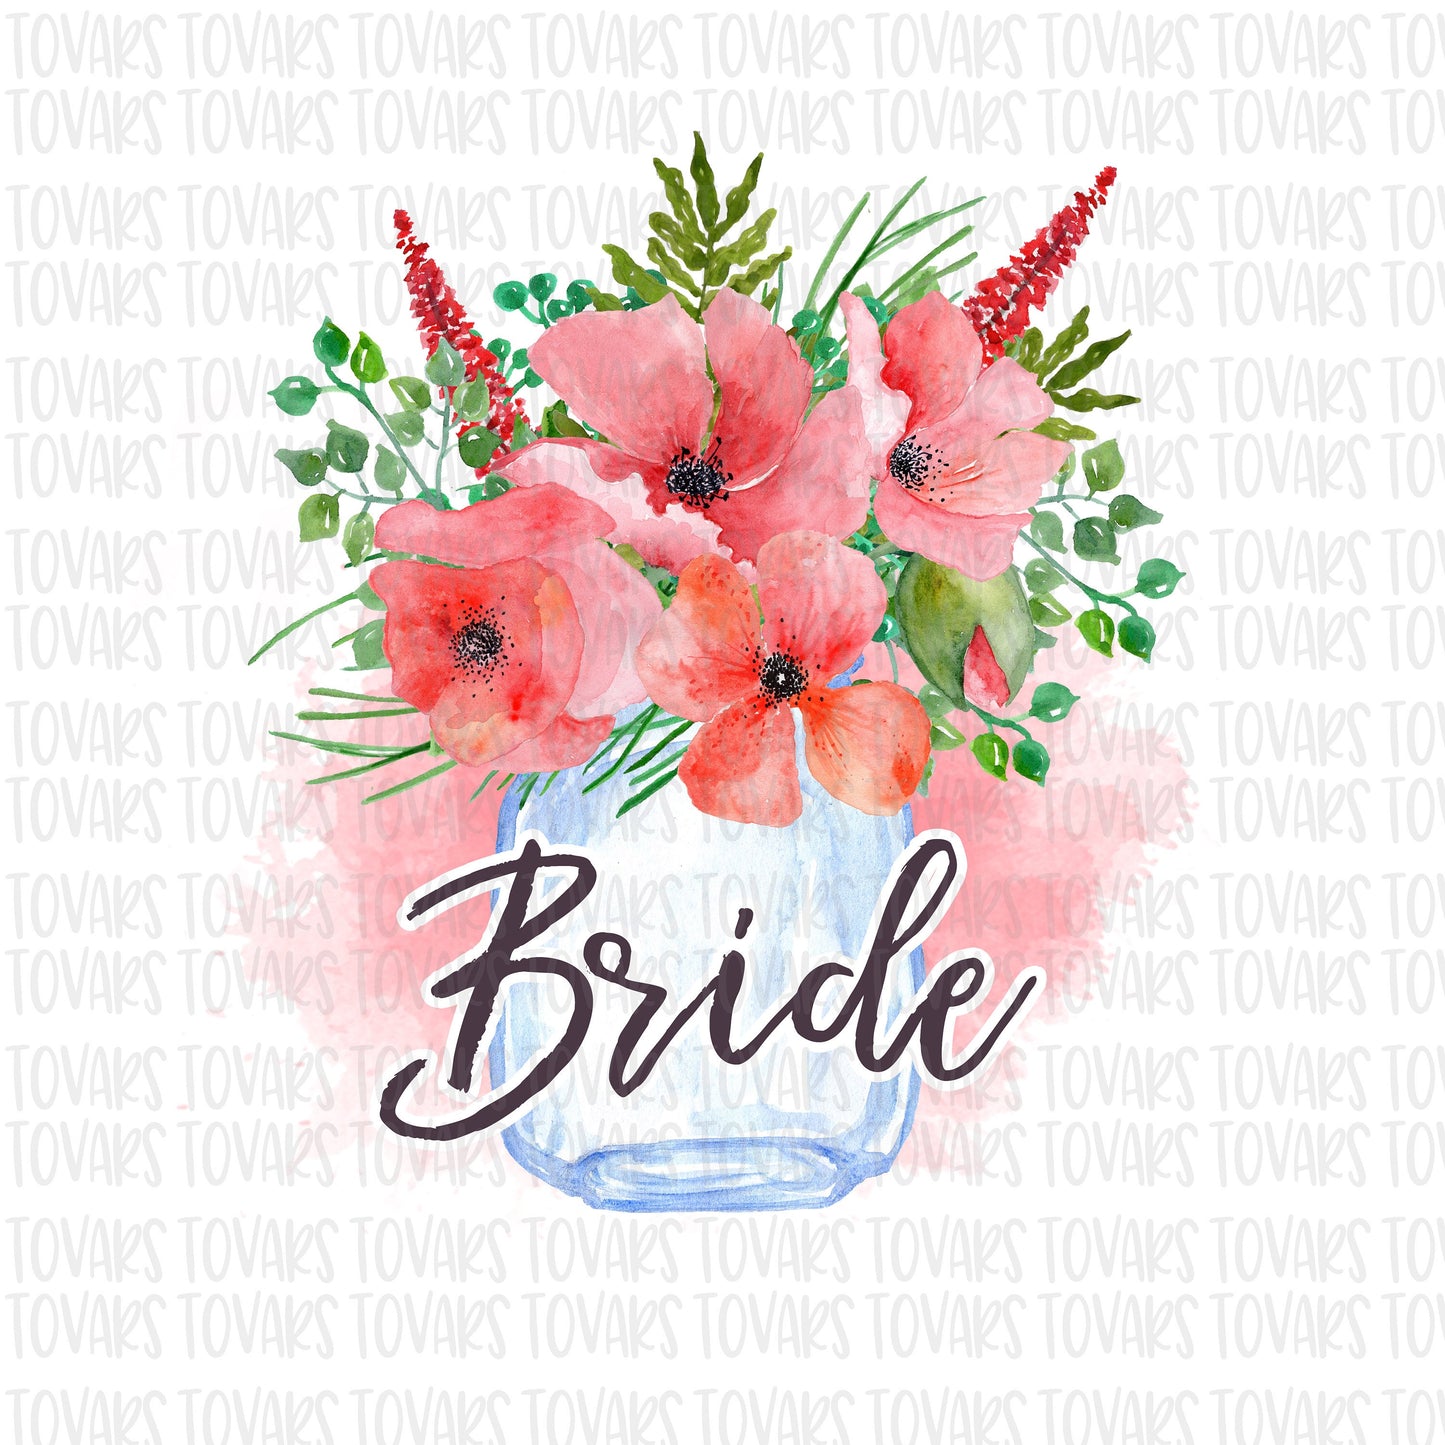 Bride Mason Jar Coral Sublimation Download, Coral Floral Mason Jar PNG, Watercolor Floral Bride Sublimation Design png file, Coral Bride png